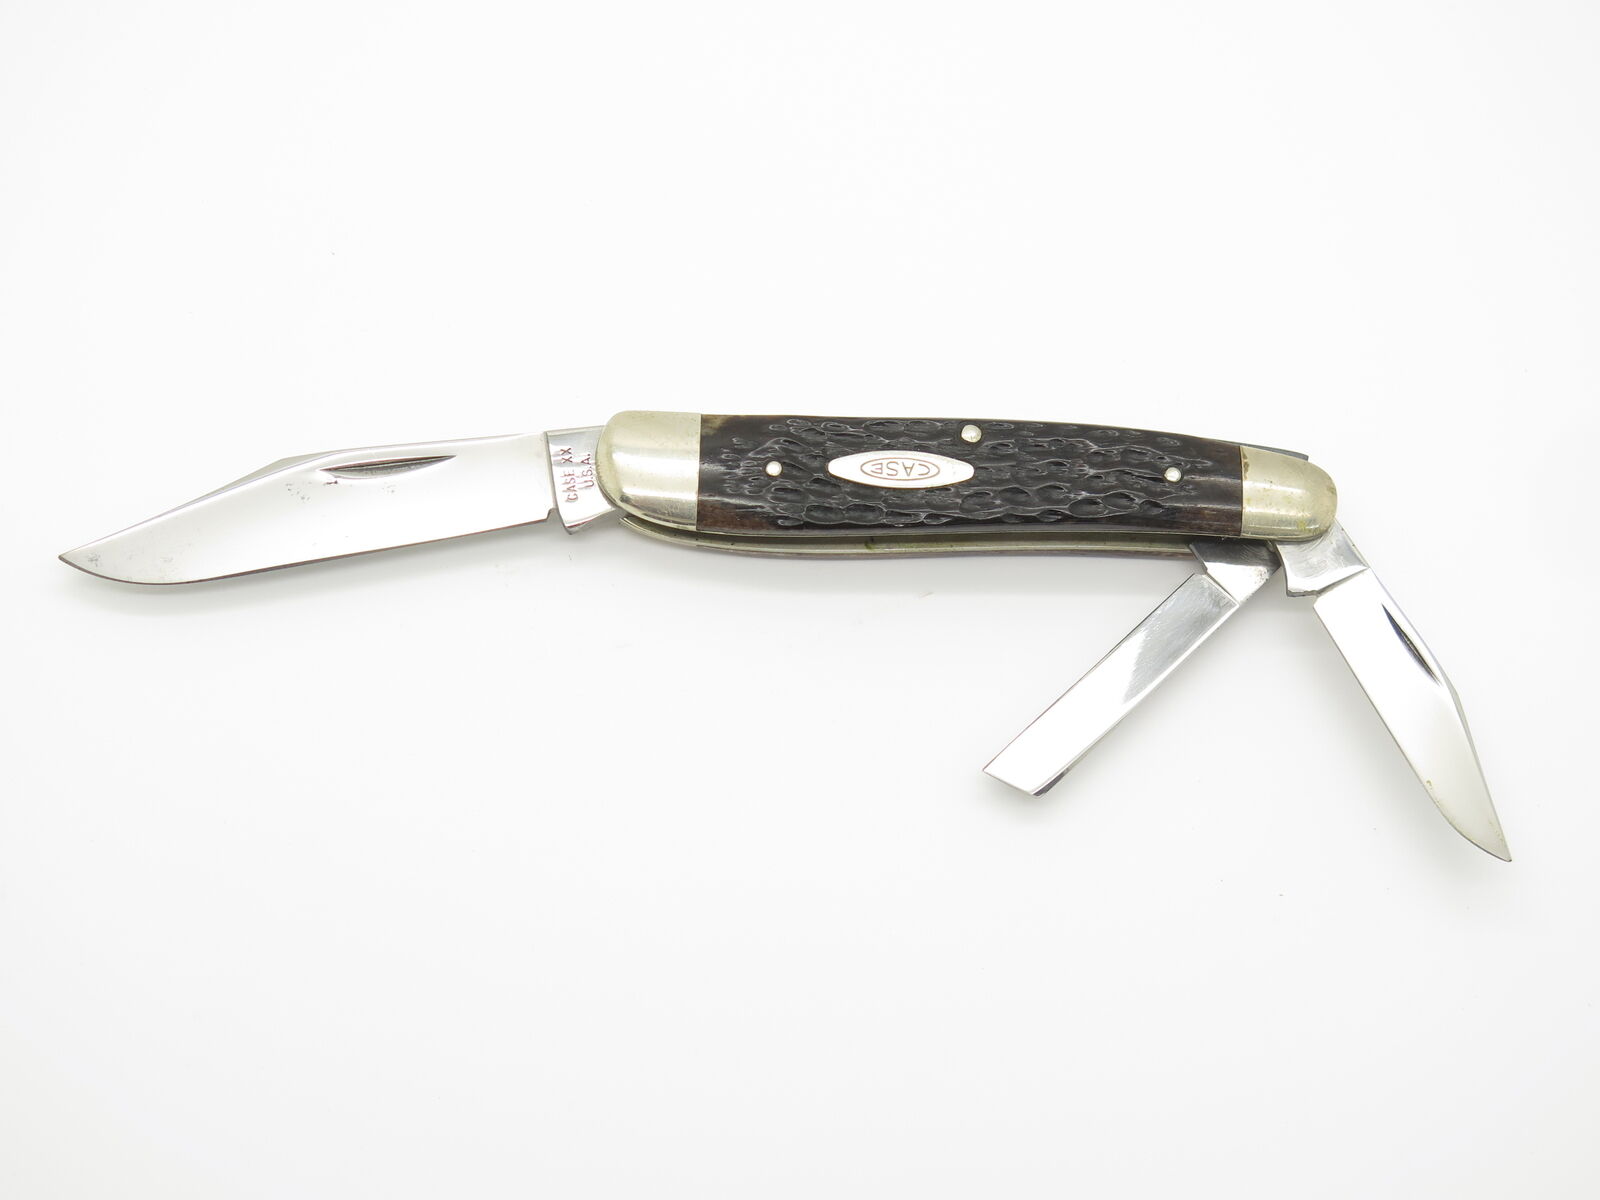 Vintage 1976 Case XX USA 6380 Whittler Jigged Bone Folding Pocket Knife